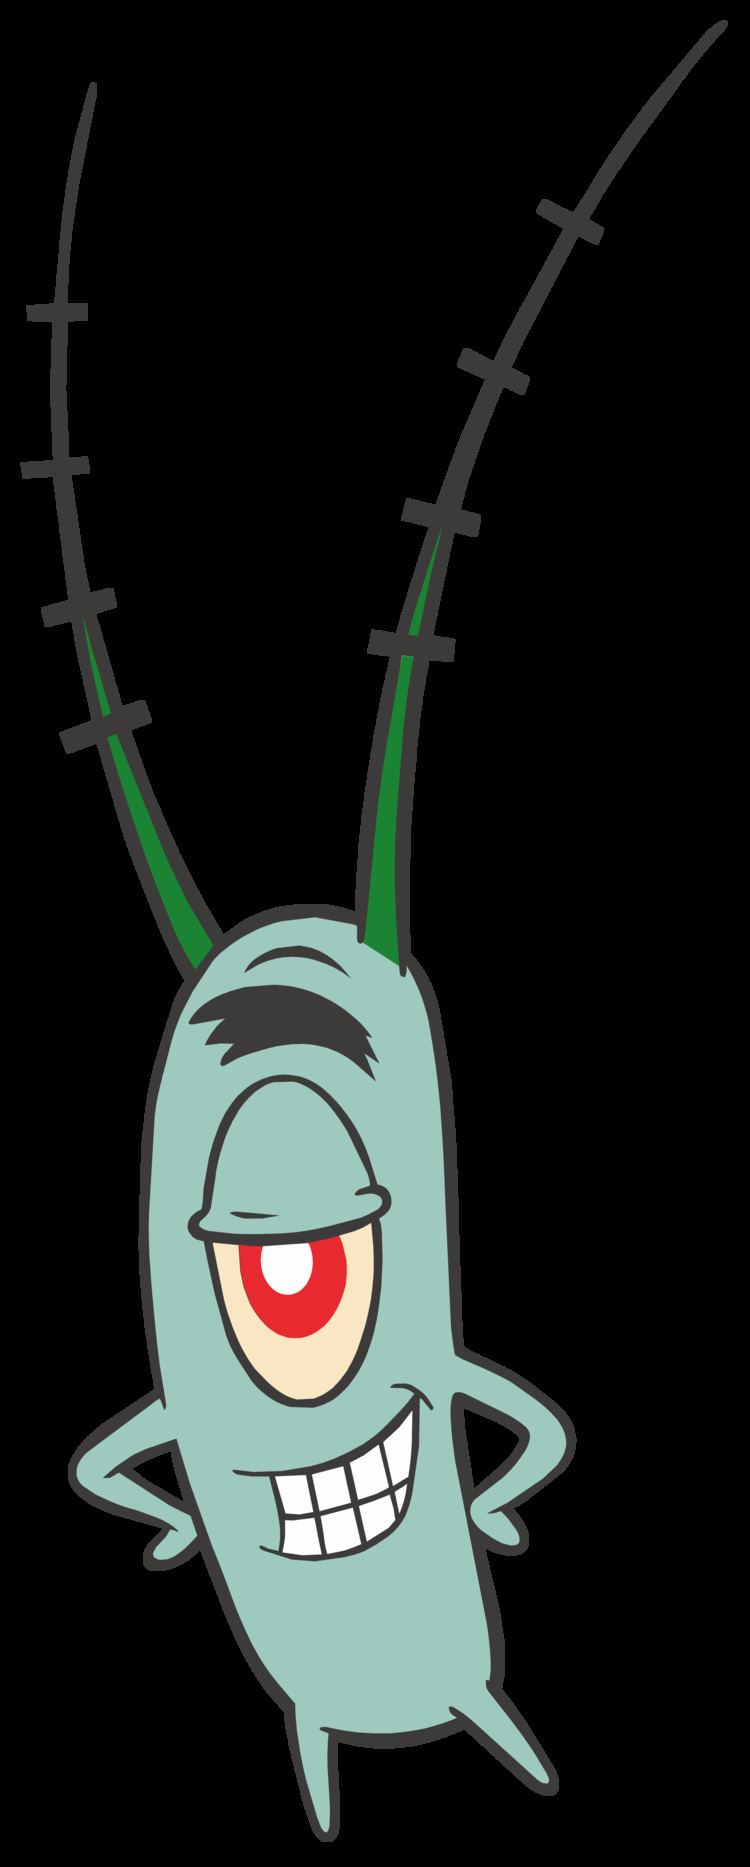 Plankton (character) Sheldon Plankton SpongeBob PNG Clipart Image